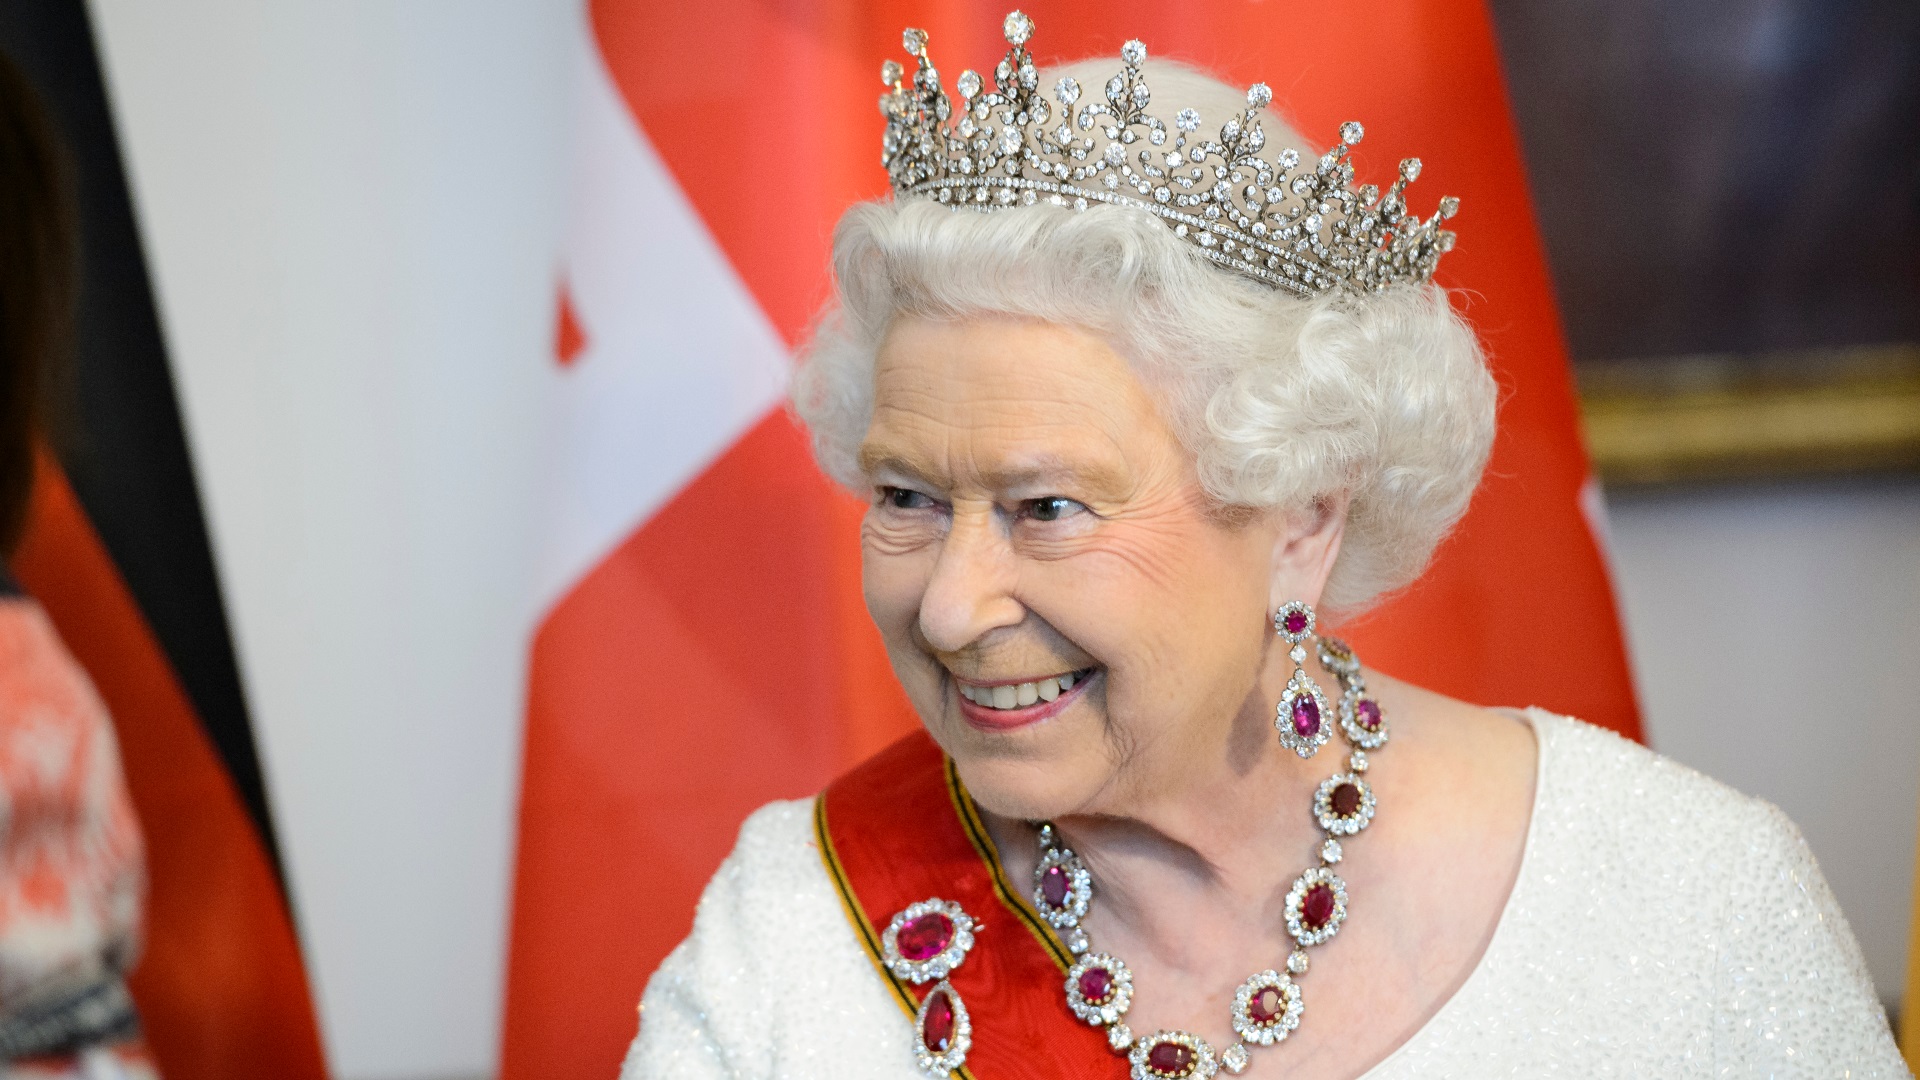 <p><strong>Кралица Елизабет II става на 95 години</strong></p>

<p>Кралицата на Великобритания вече е най-дълго царувалият монарх в света, а през 2021 г. ще стане на цели 95 години. Рожденият ѝ ден е на 21 април и със сигурност ще бъде отбелязан от поданиците ѝ.</p>